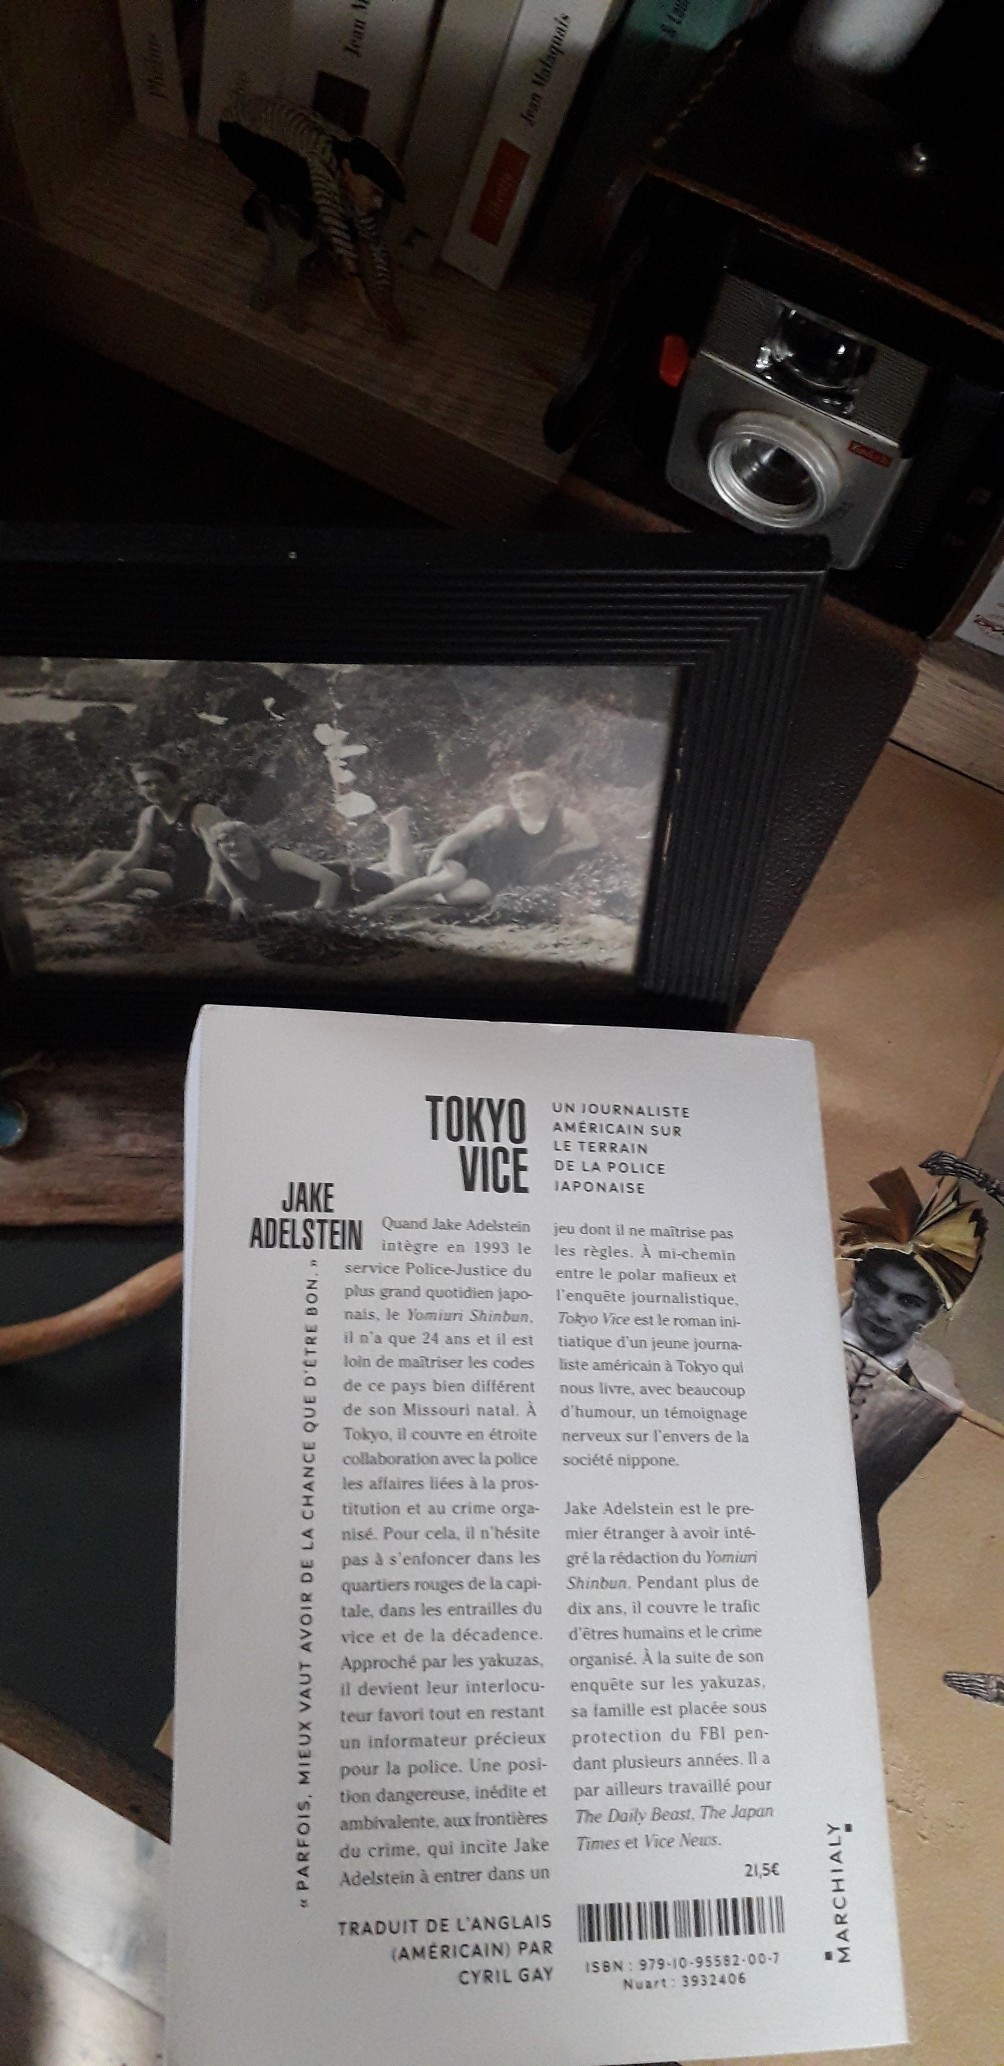 4ème de couverture du livre de Jake Adelstein, "Tokyo Vice", aux éditions Marchialy.